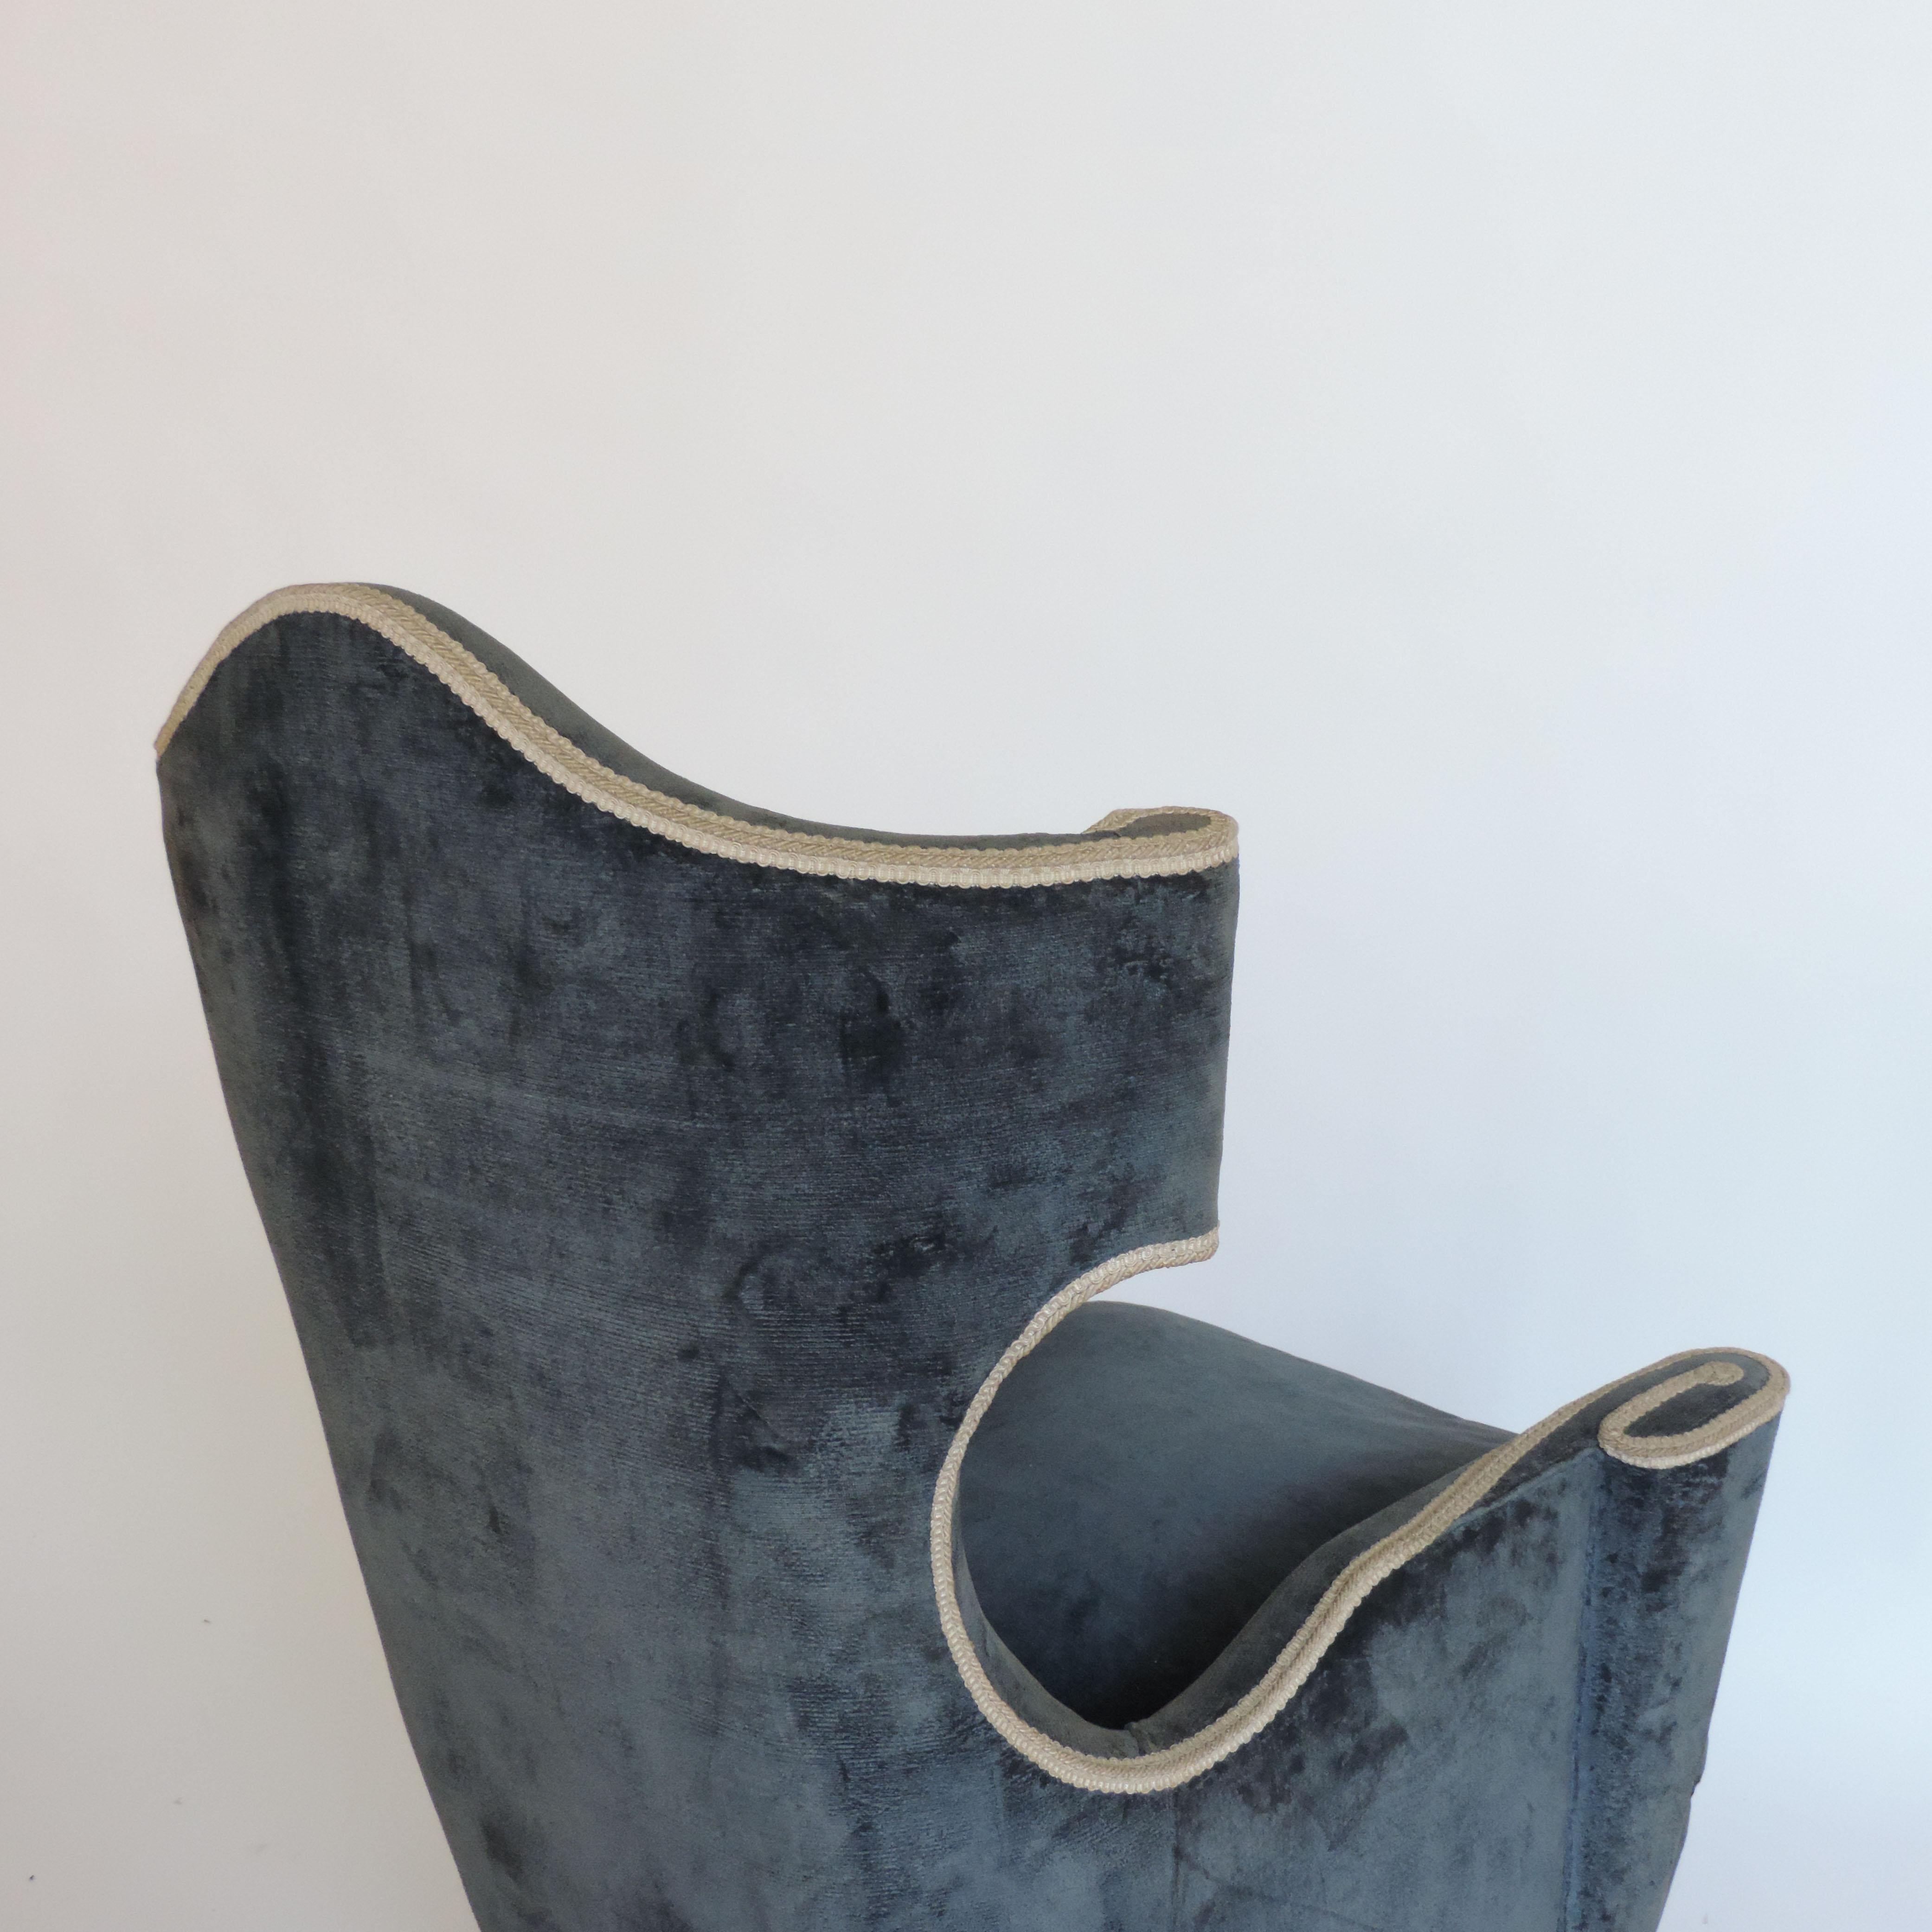 Surréaliste paire de fauteuils Bergeres italiens des années 1950 dans leur revêtement d'origine en velours bleu foncé.
Pieds en bois conique